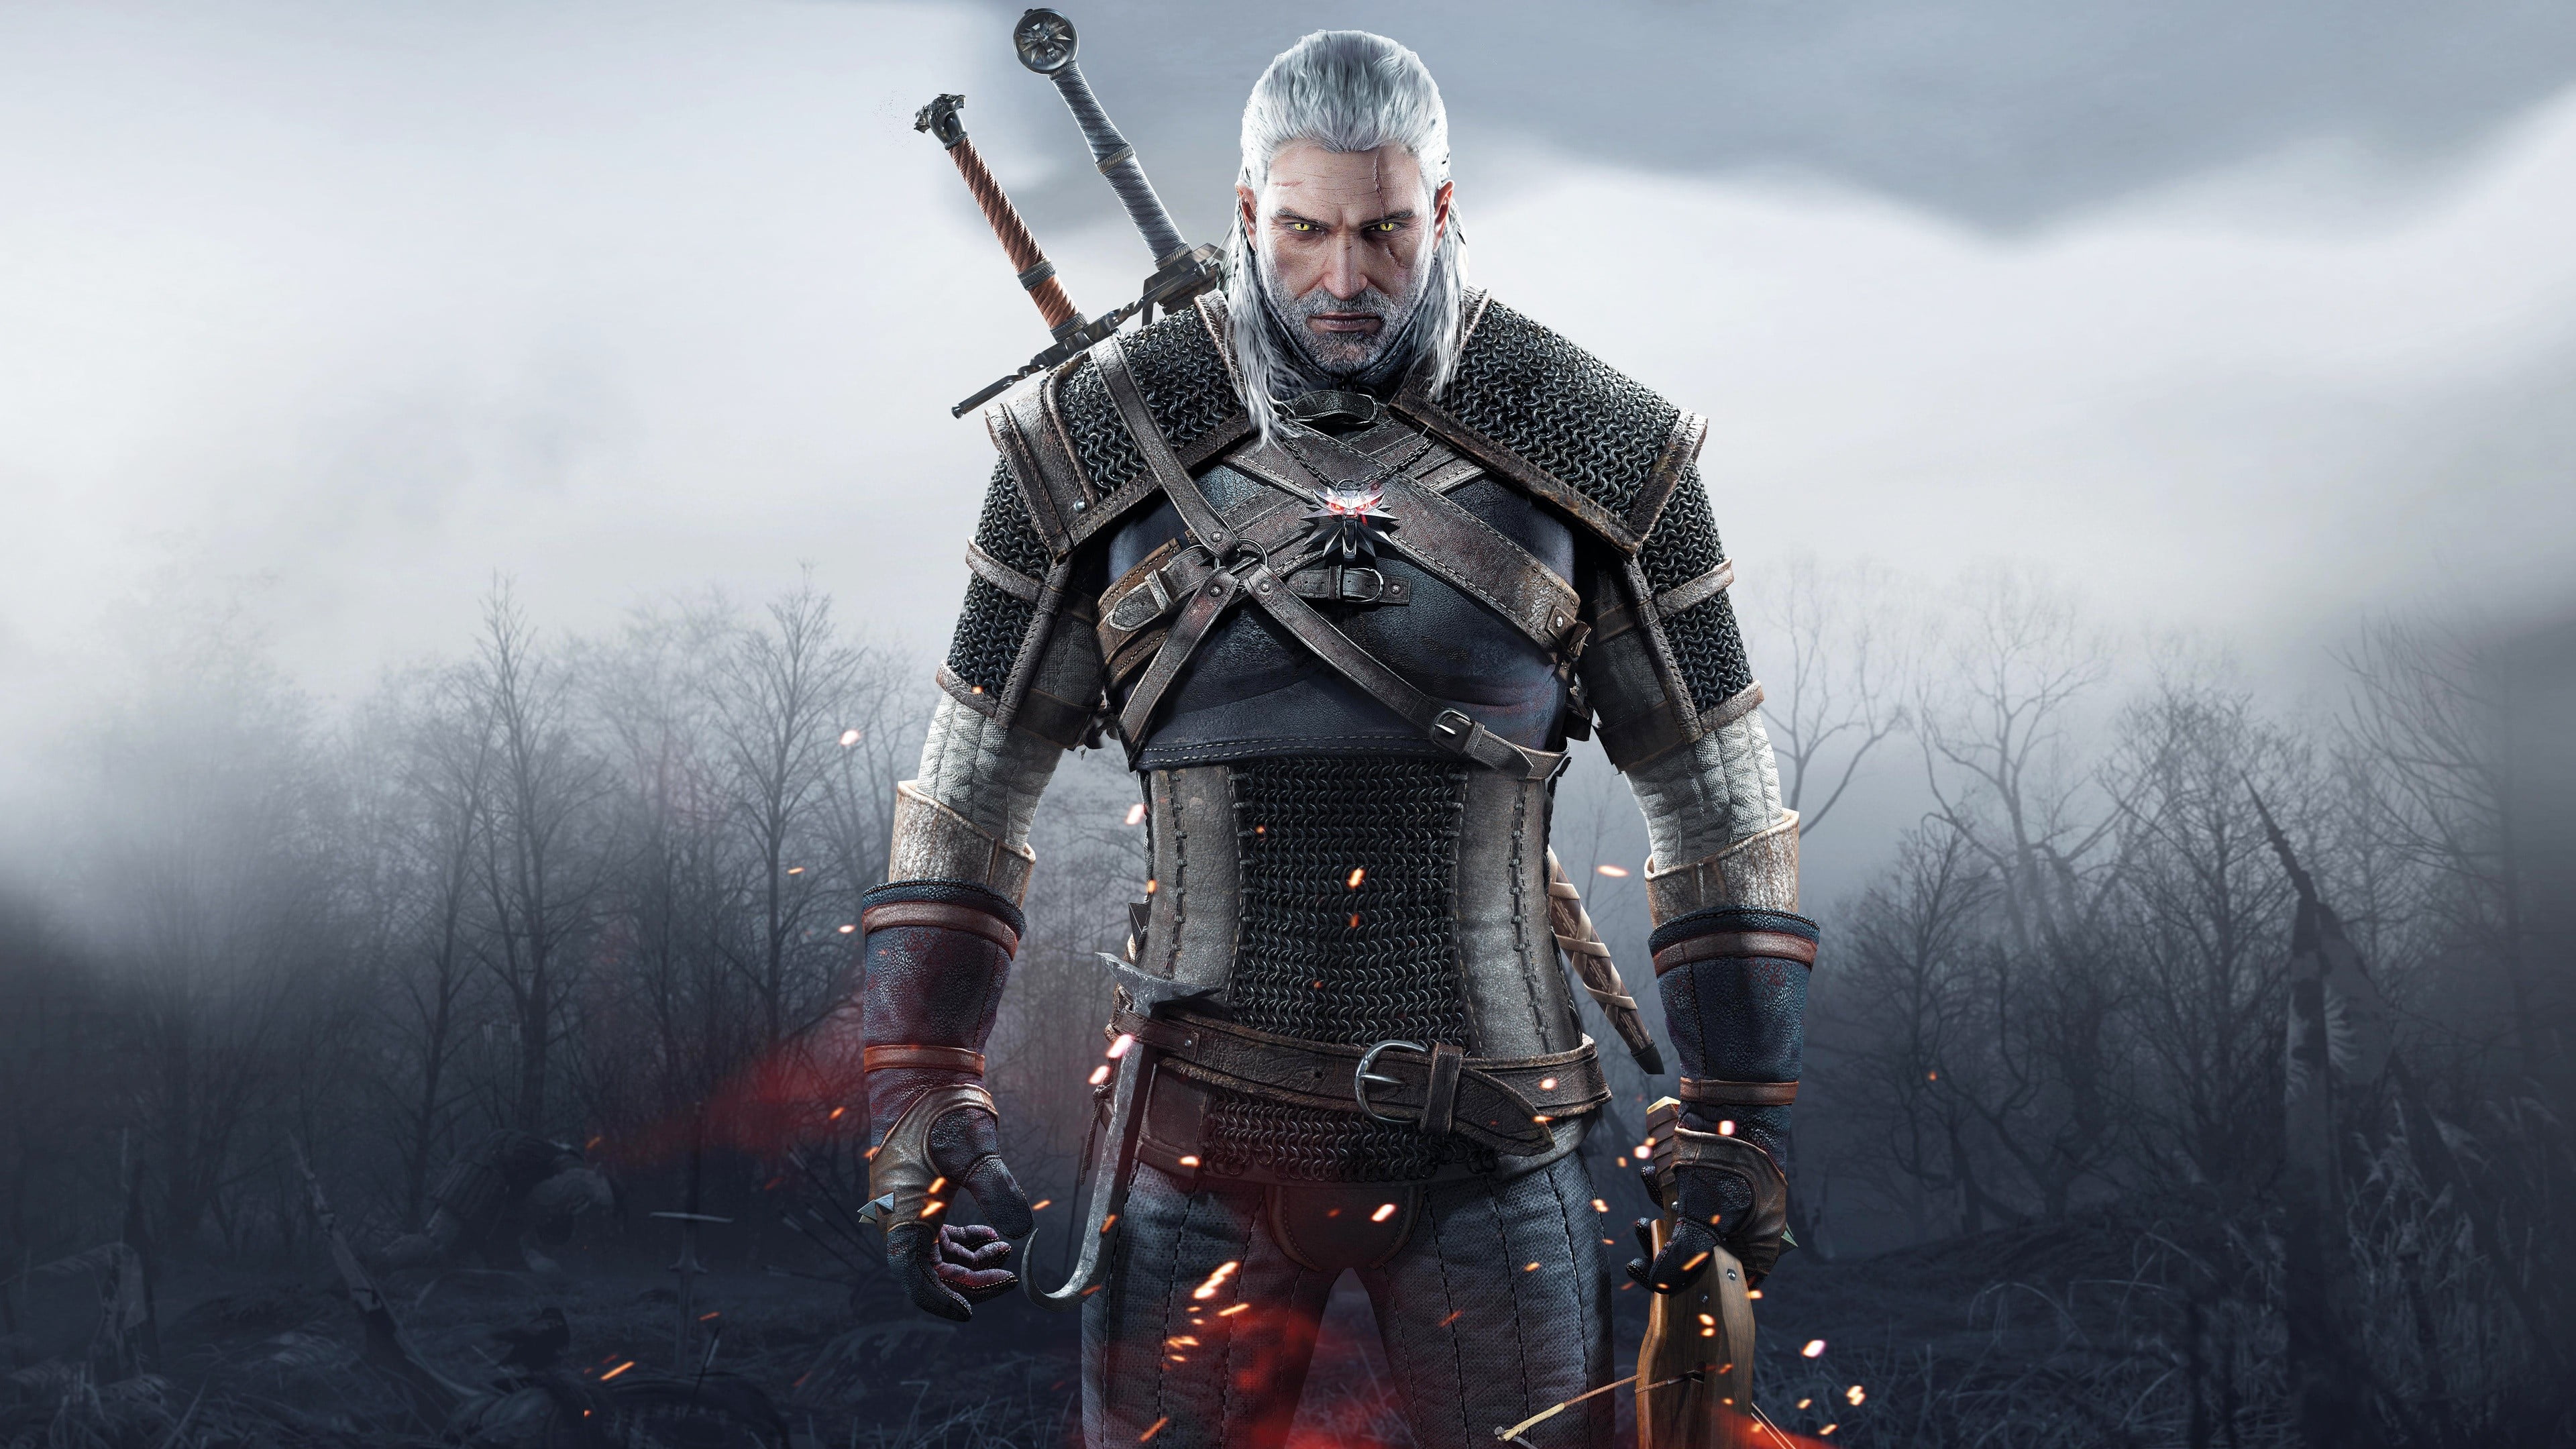 Witcher 3 Geralt 4k , HD Wallpaper & Backgrounds